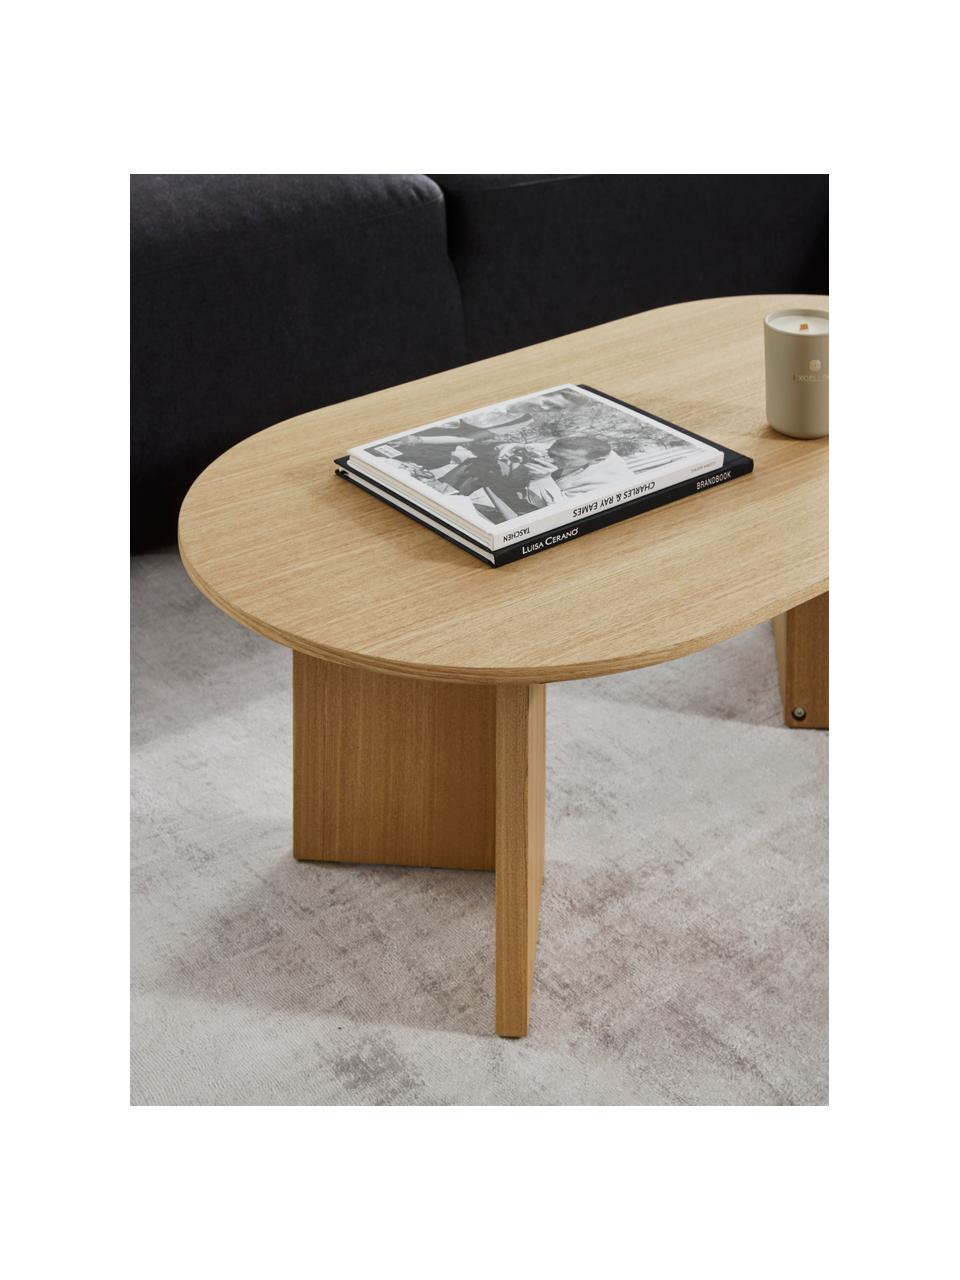 Table basse ovale en bois Toni, MDF (panneau en fibres de bois à densité moyenne) avec placage en frêne, laqué, Bois de frêne, larg. 100 x prof. 55 cm